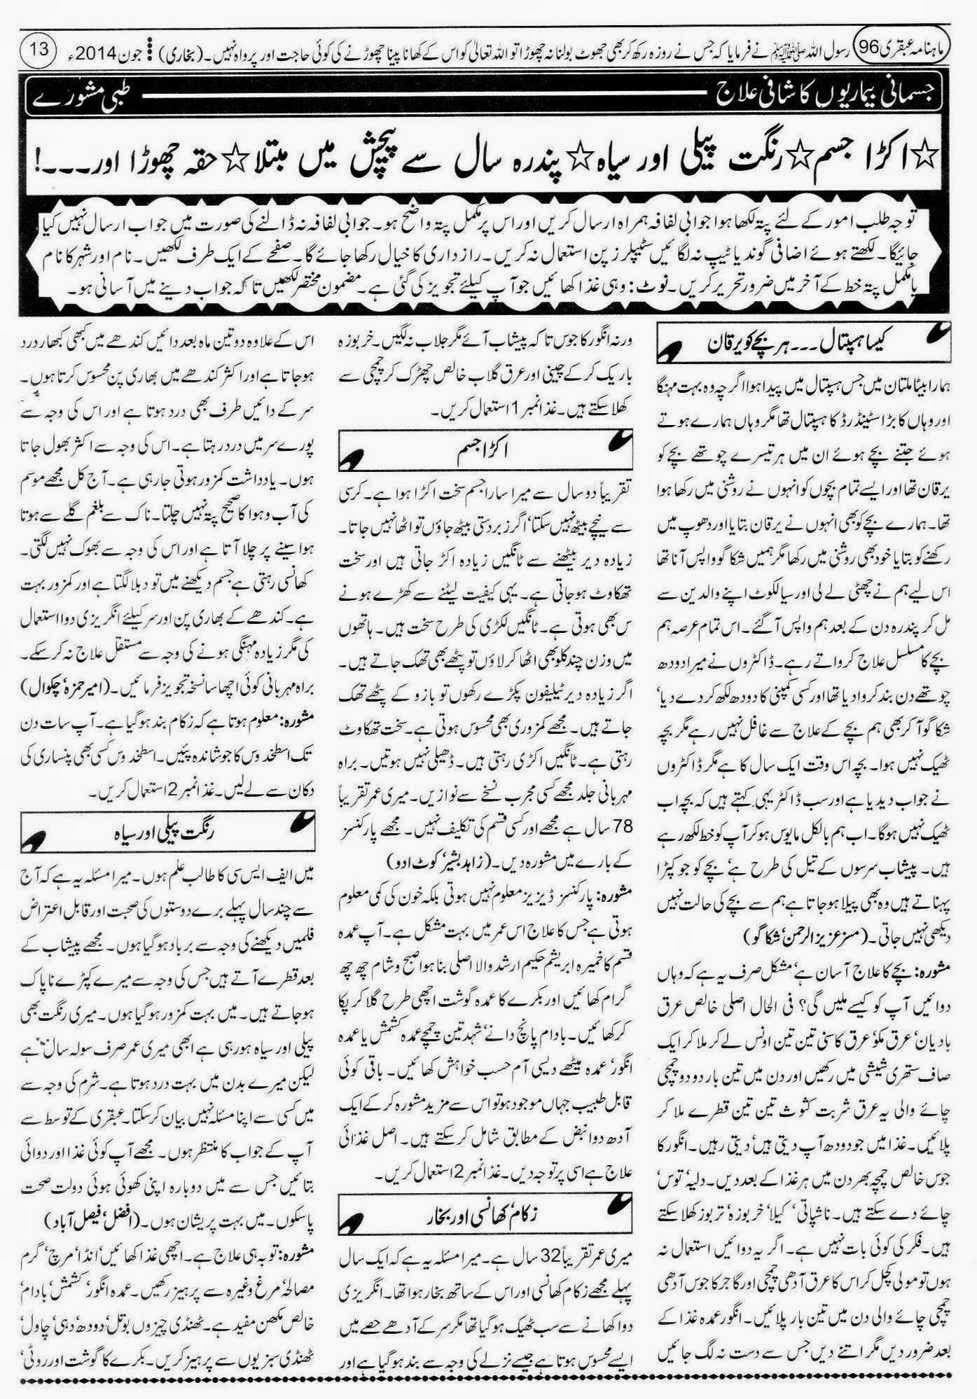 ubqari june 2014 page 13